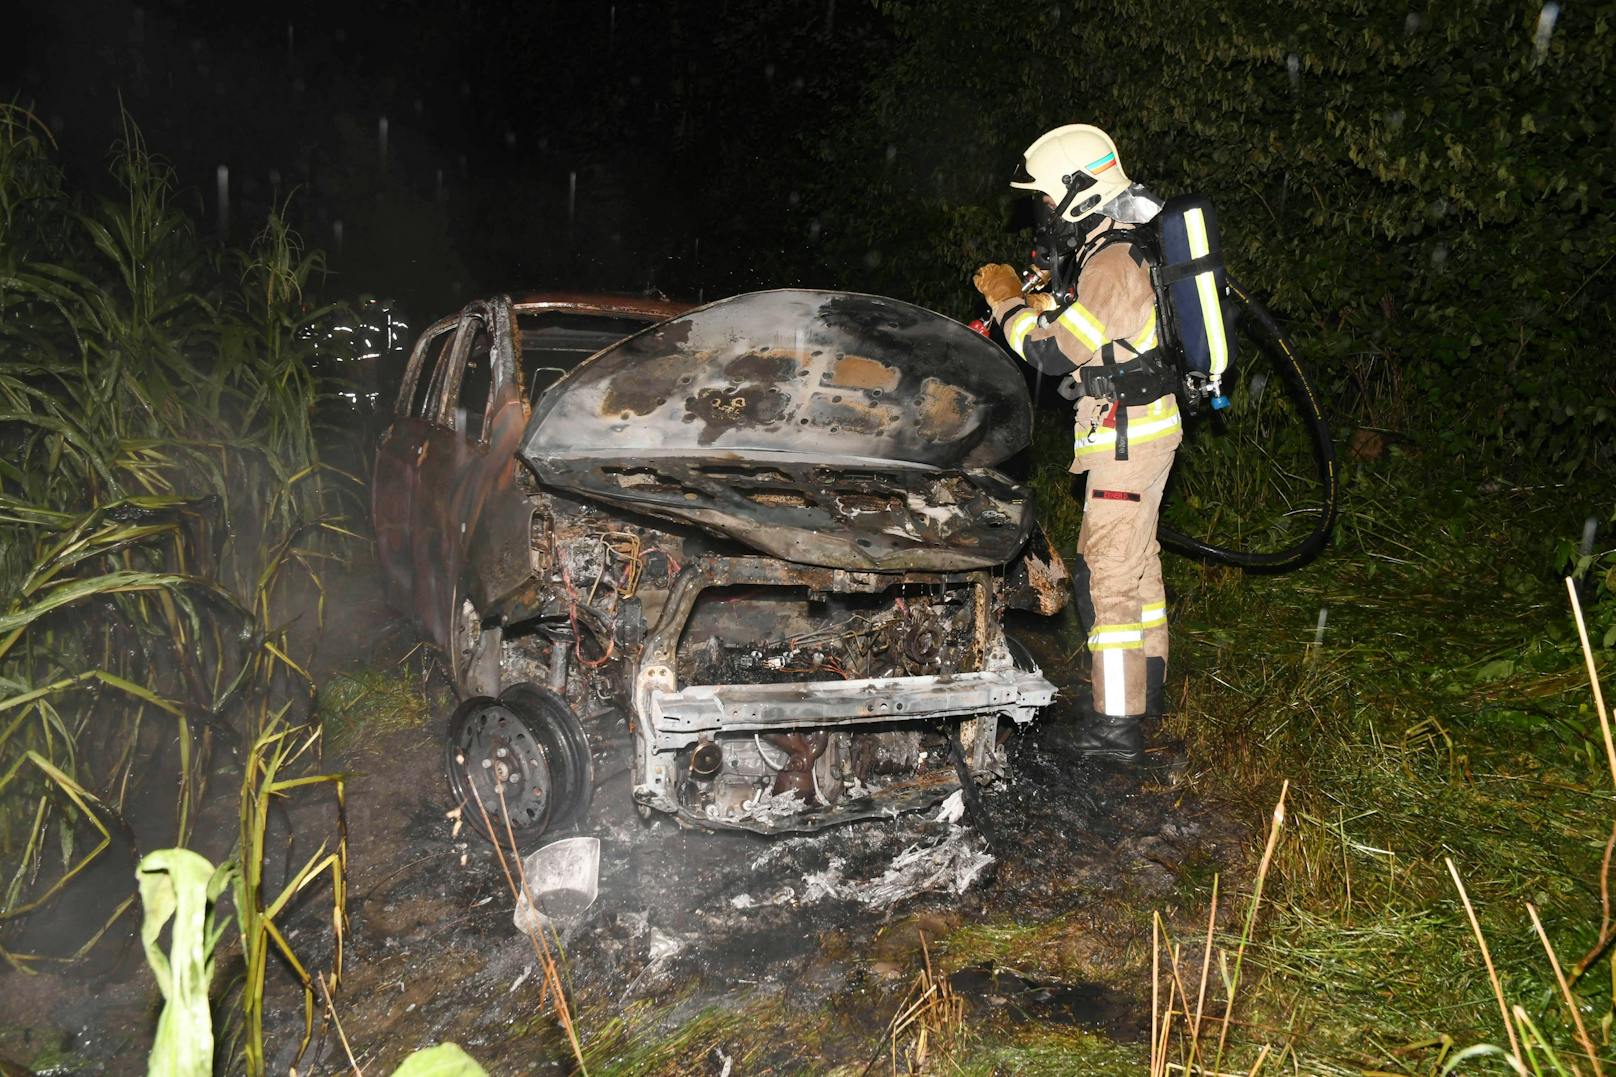 Fahrzeugbrand in Langkampfen, Bezirk Kufstein, am 30. Juli 2021